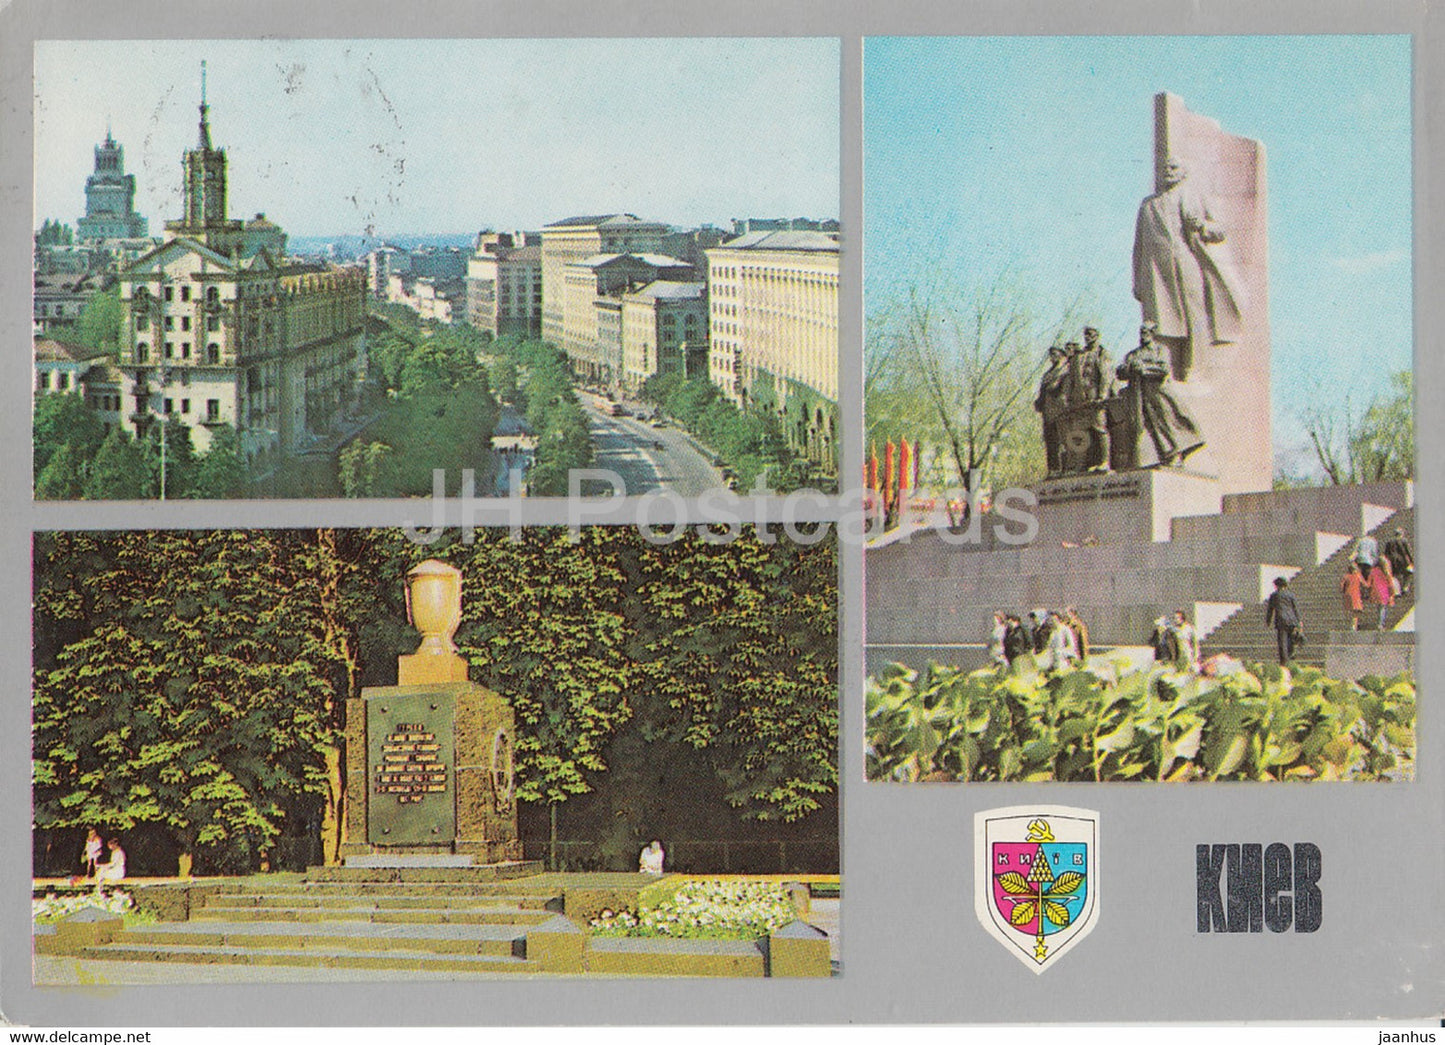 Kyiv - Kiev - October Revolution monument - 1981 - Ukraine USSR - unused - JH Postcards